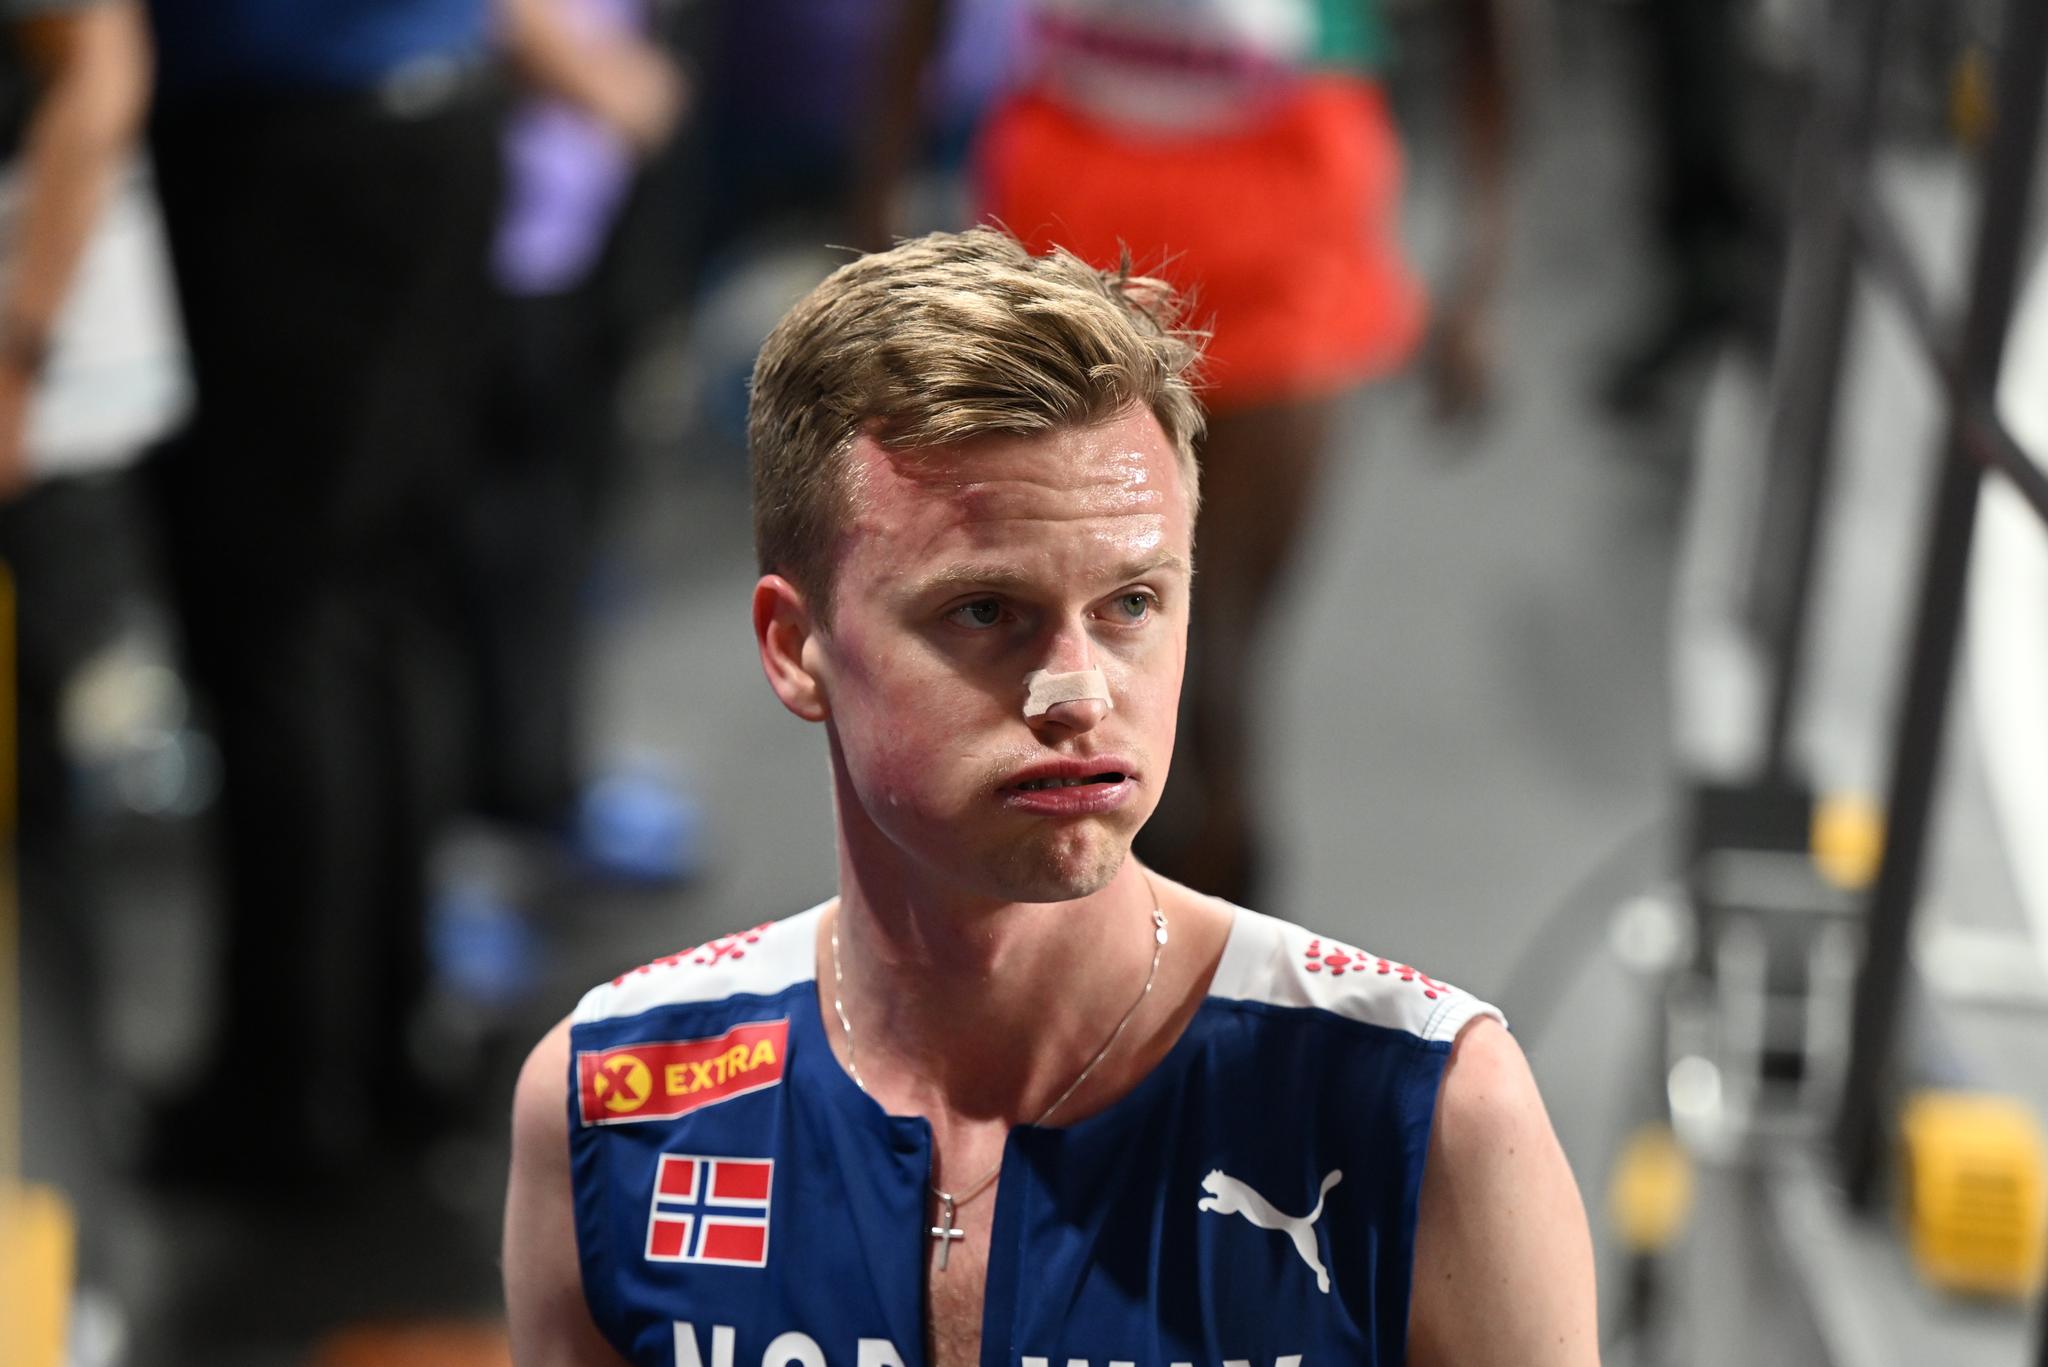 VM-fiasko for Narve Gilje Nordås: – Det blir et helsike